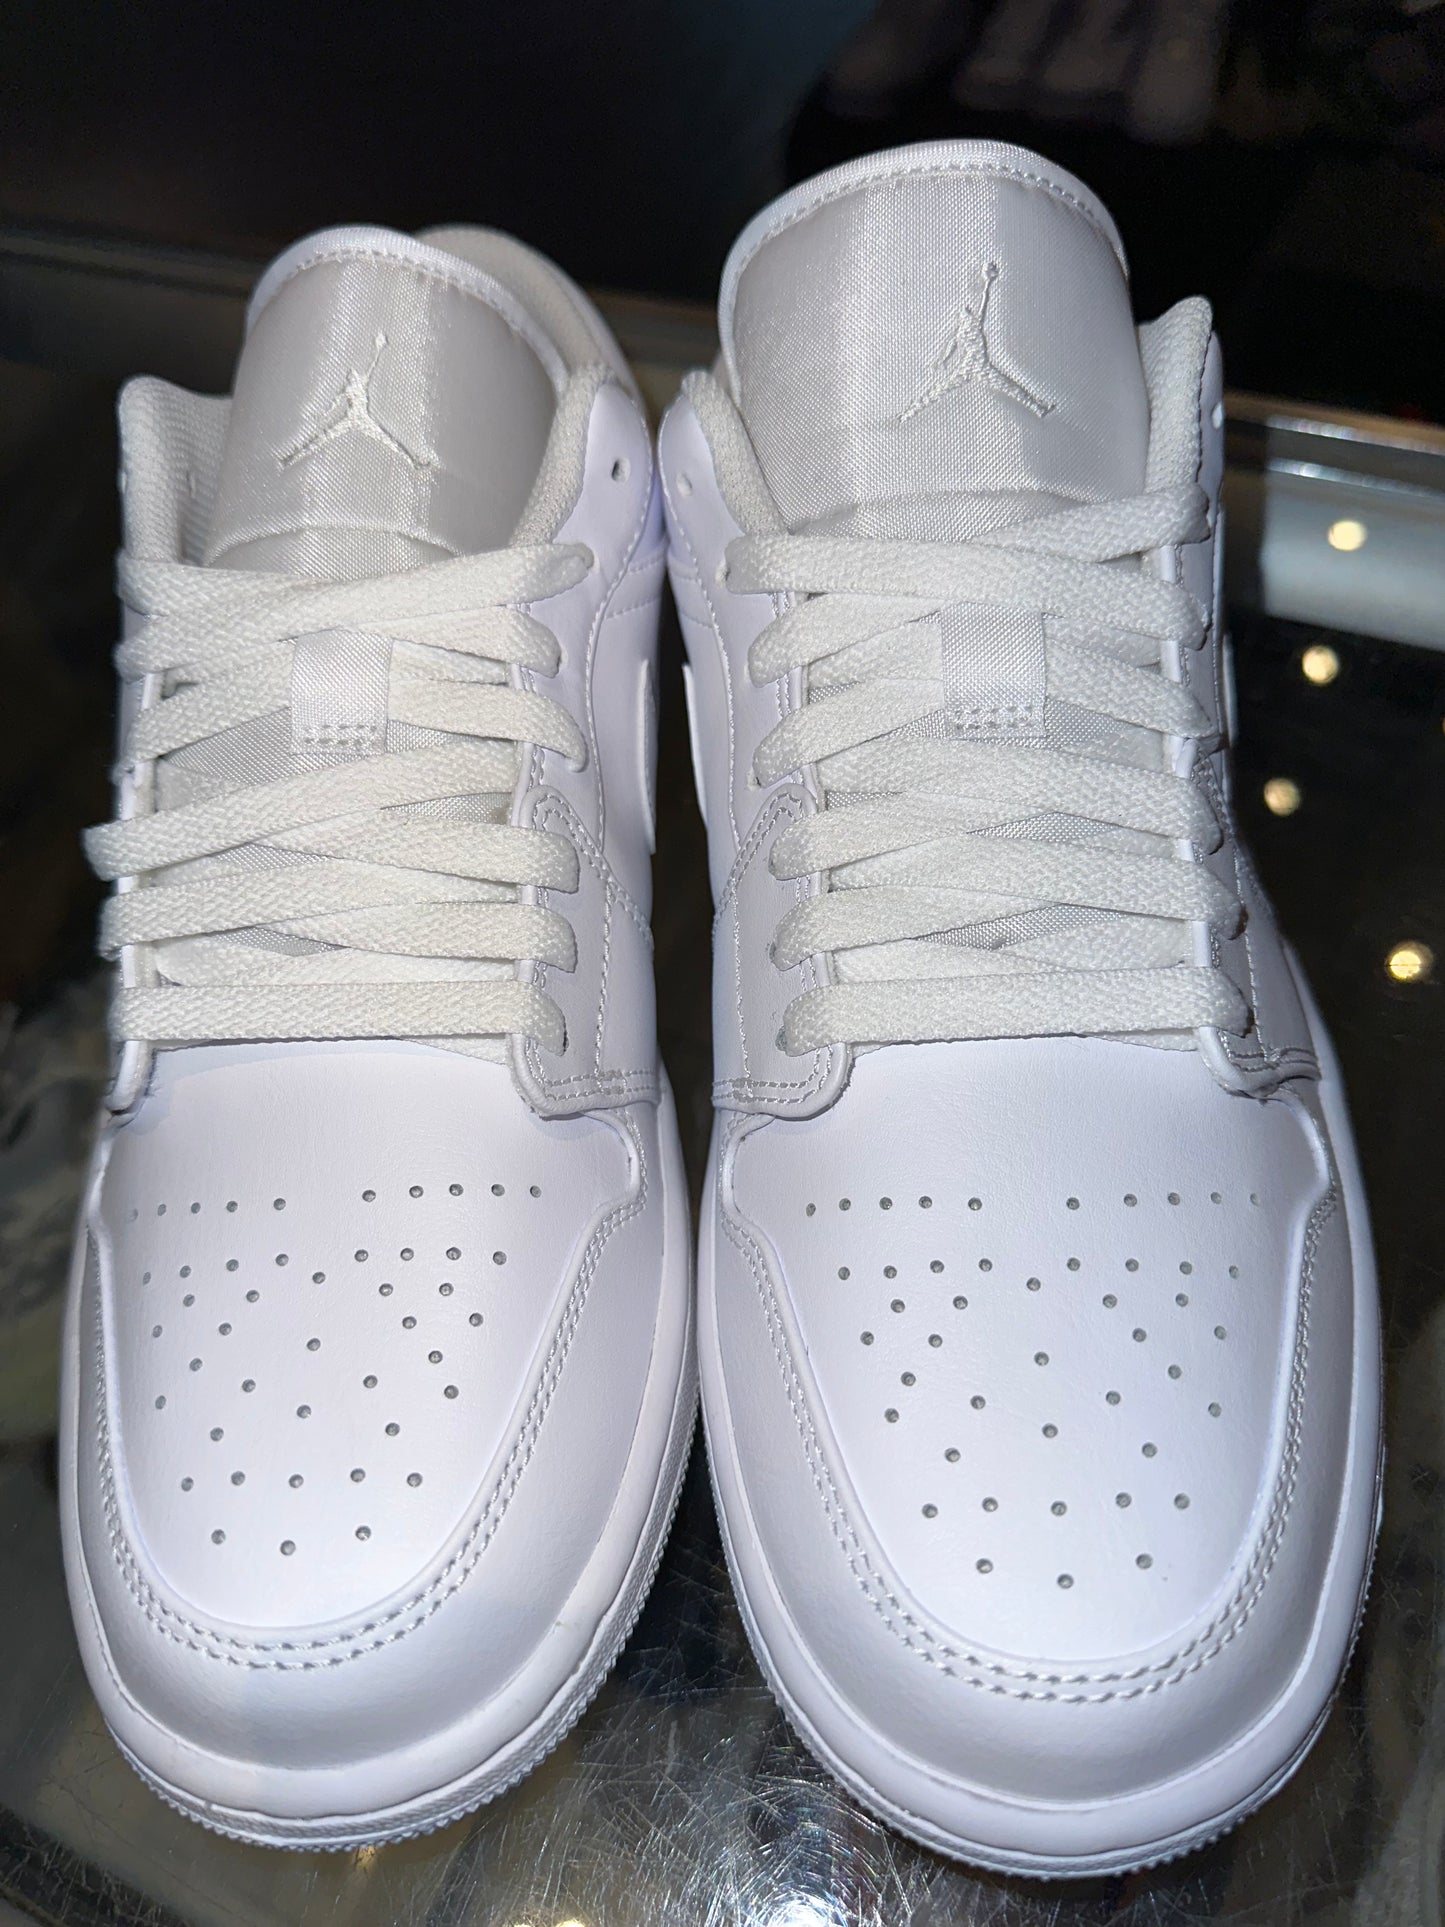 Size 9 Air Jordan 1 Low “Triple White” Brand New (Mall)